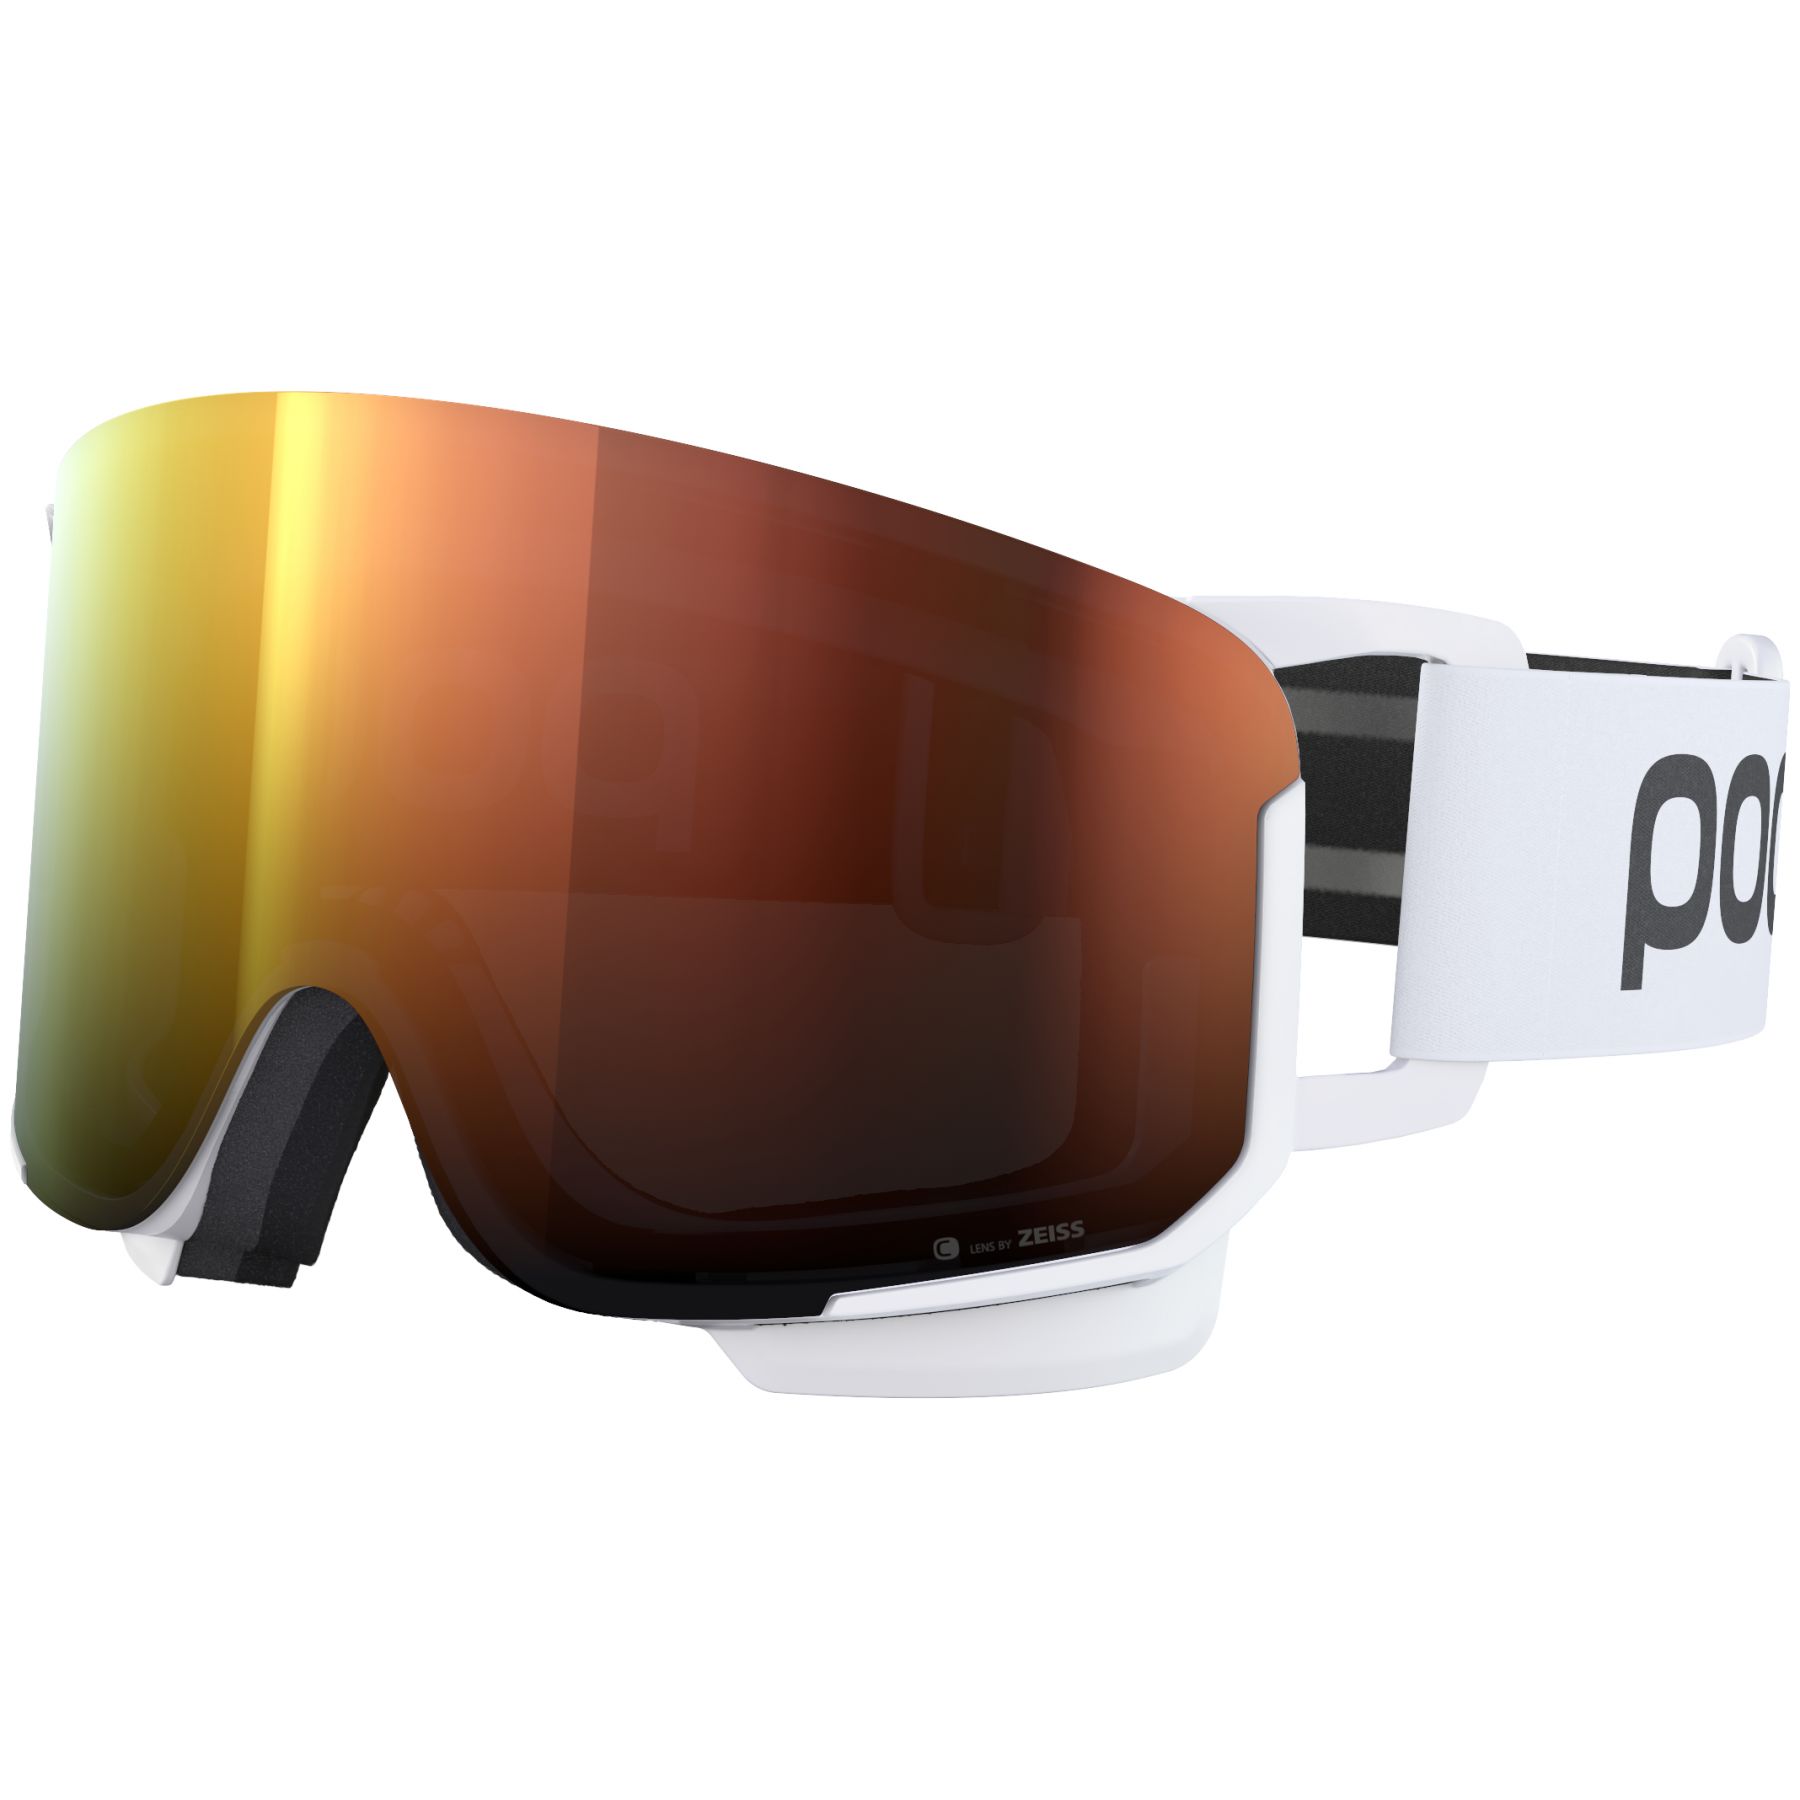 Brug POC Nexal Clarity, skibrille, hydrogen white/spektris orange til en forbedret oplevelse